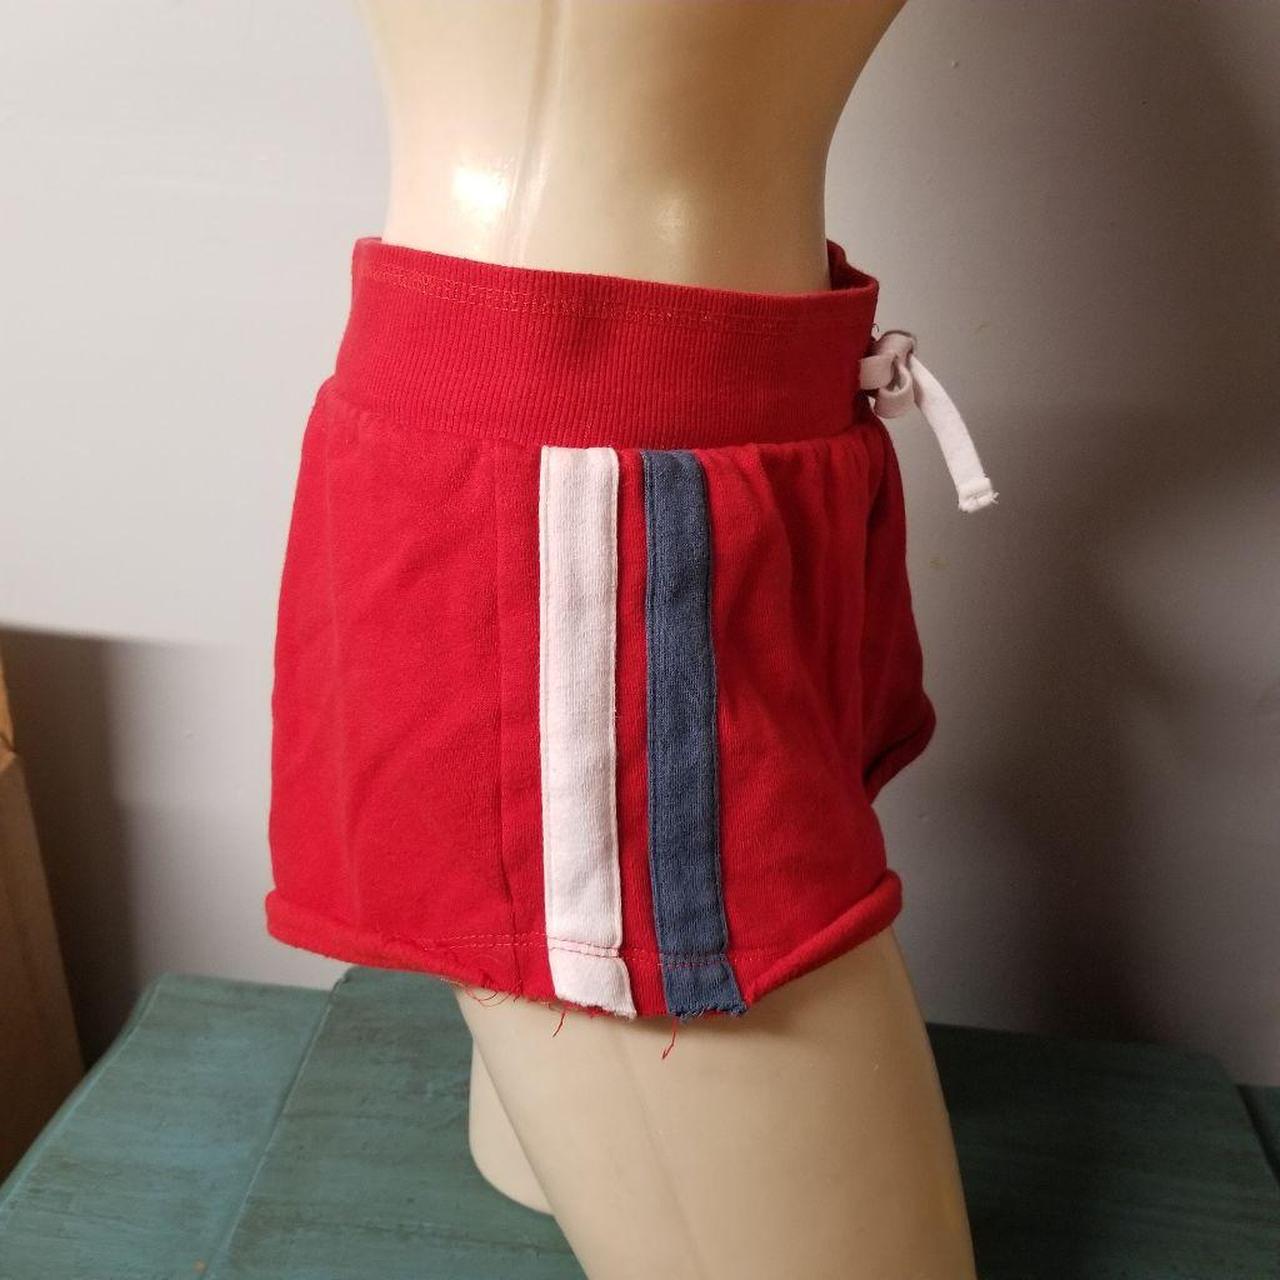 Product Image 2 - Stripe sweat shorts size medium